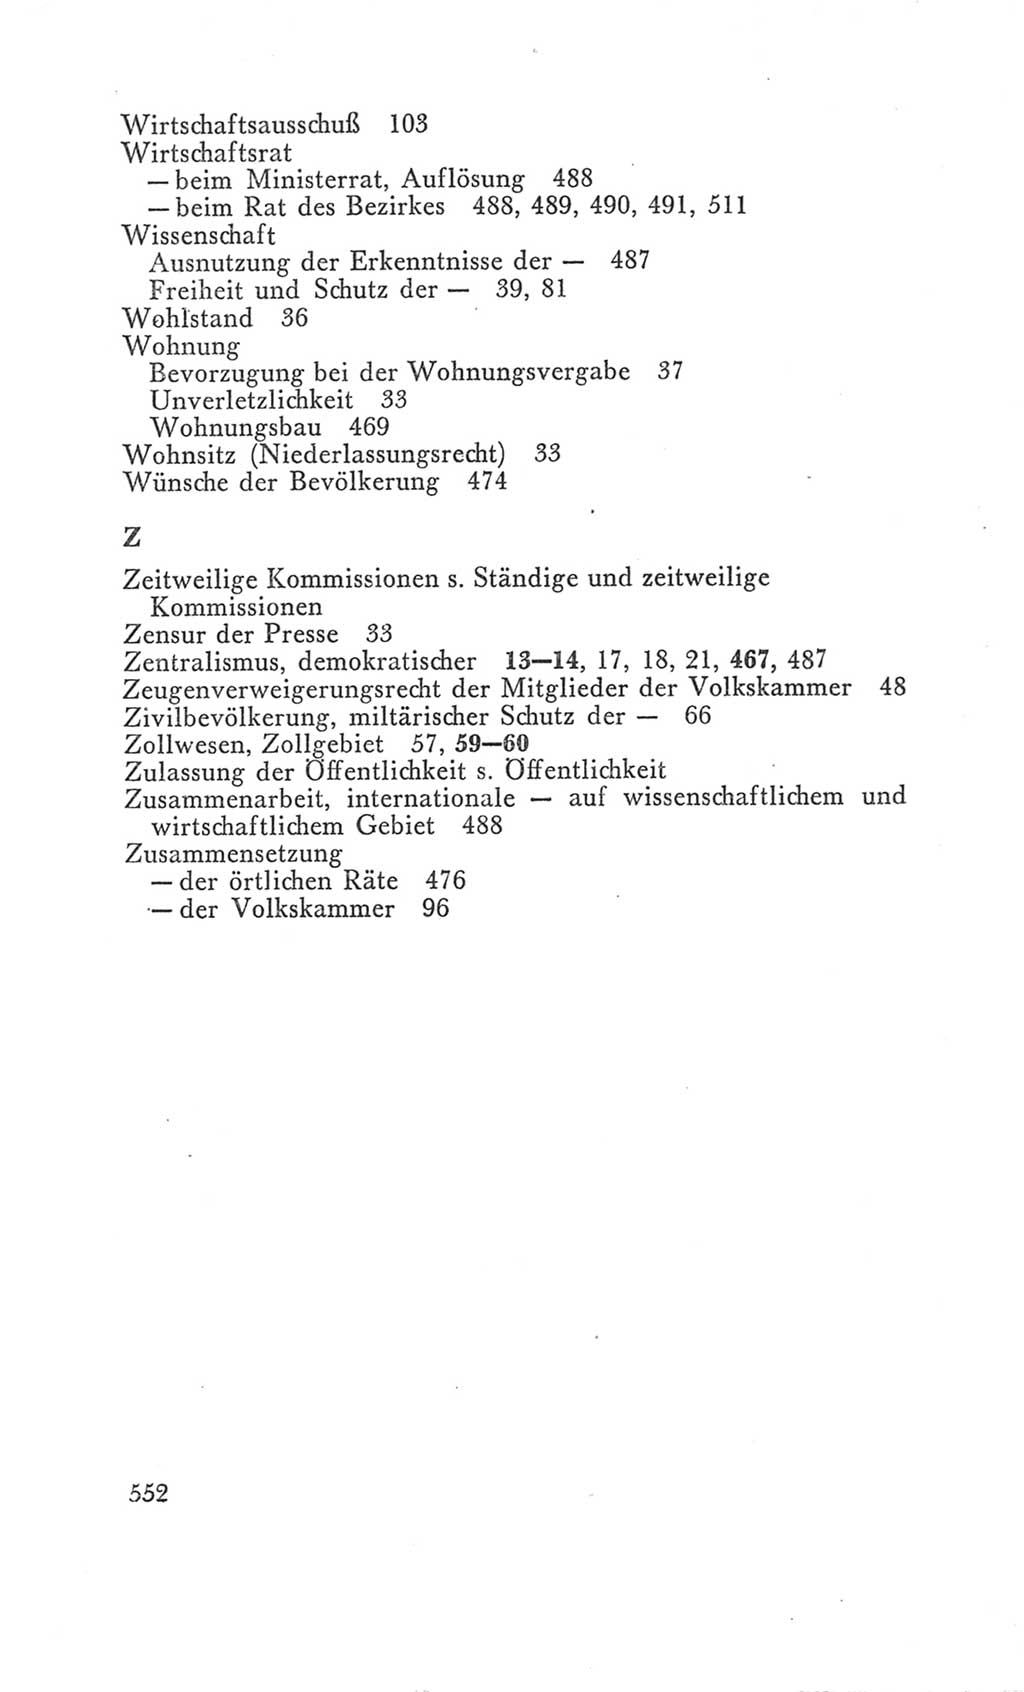 Handbuch der Volkskammer (VK) der Deutschen Demokratischen Republik (DDR), 3. Wahlperiode 1958-1963, Seite 552 (Hdb. VK. DDR 3. WP. 1958-1963, S. 552)